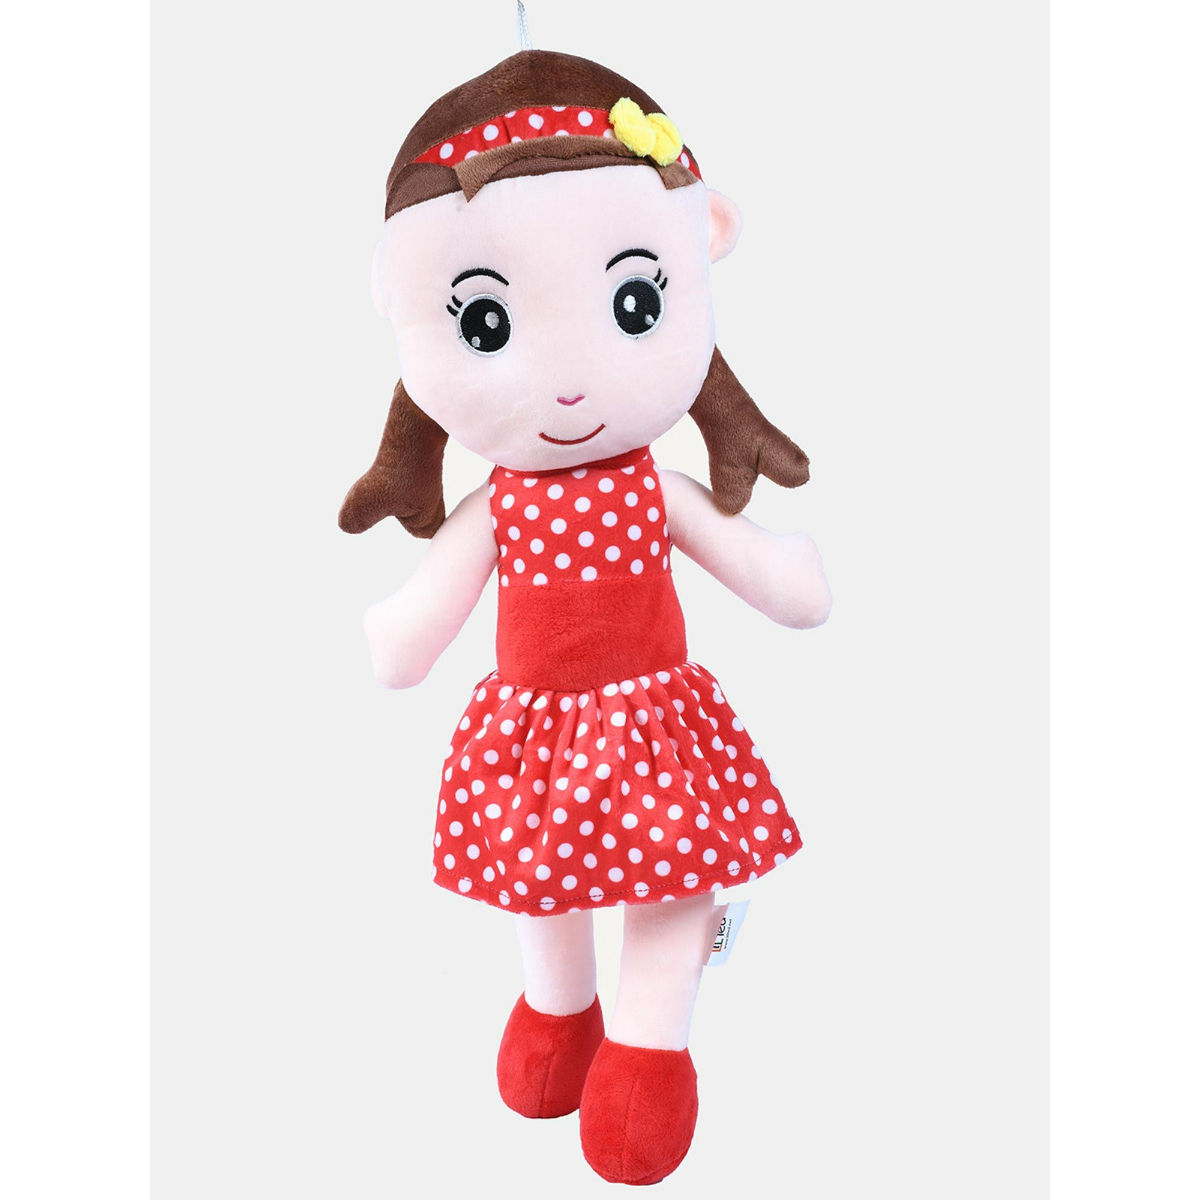 DukieKooky Red Super Cute Doll: Buy DukieKooky Red Super Cute Doll ...